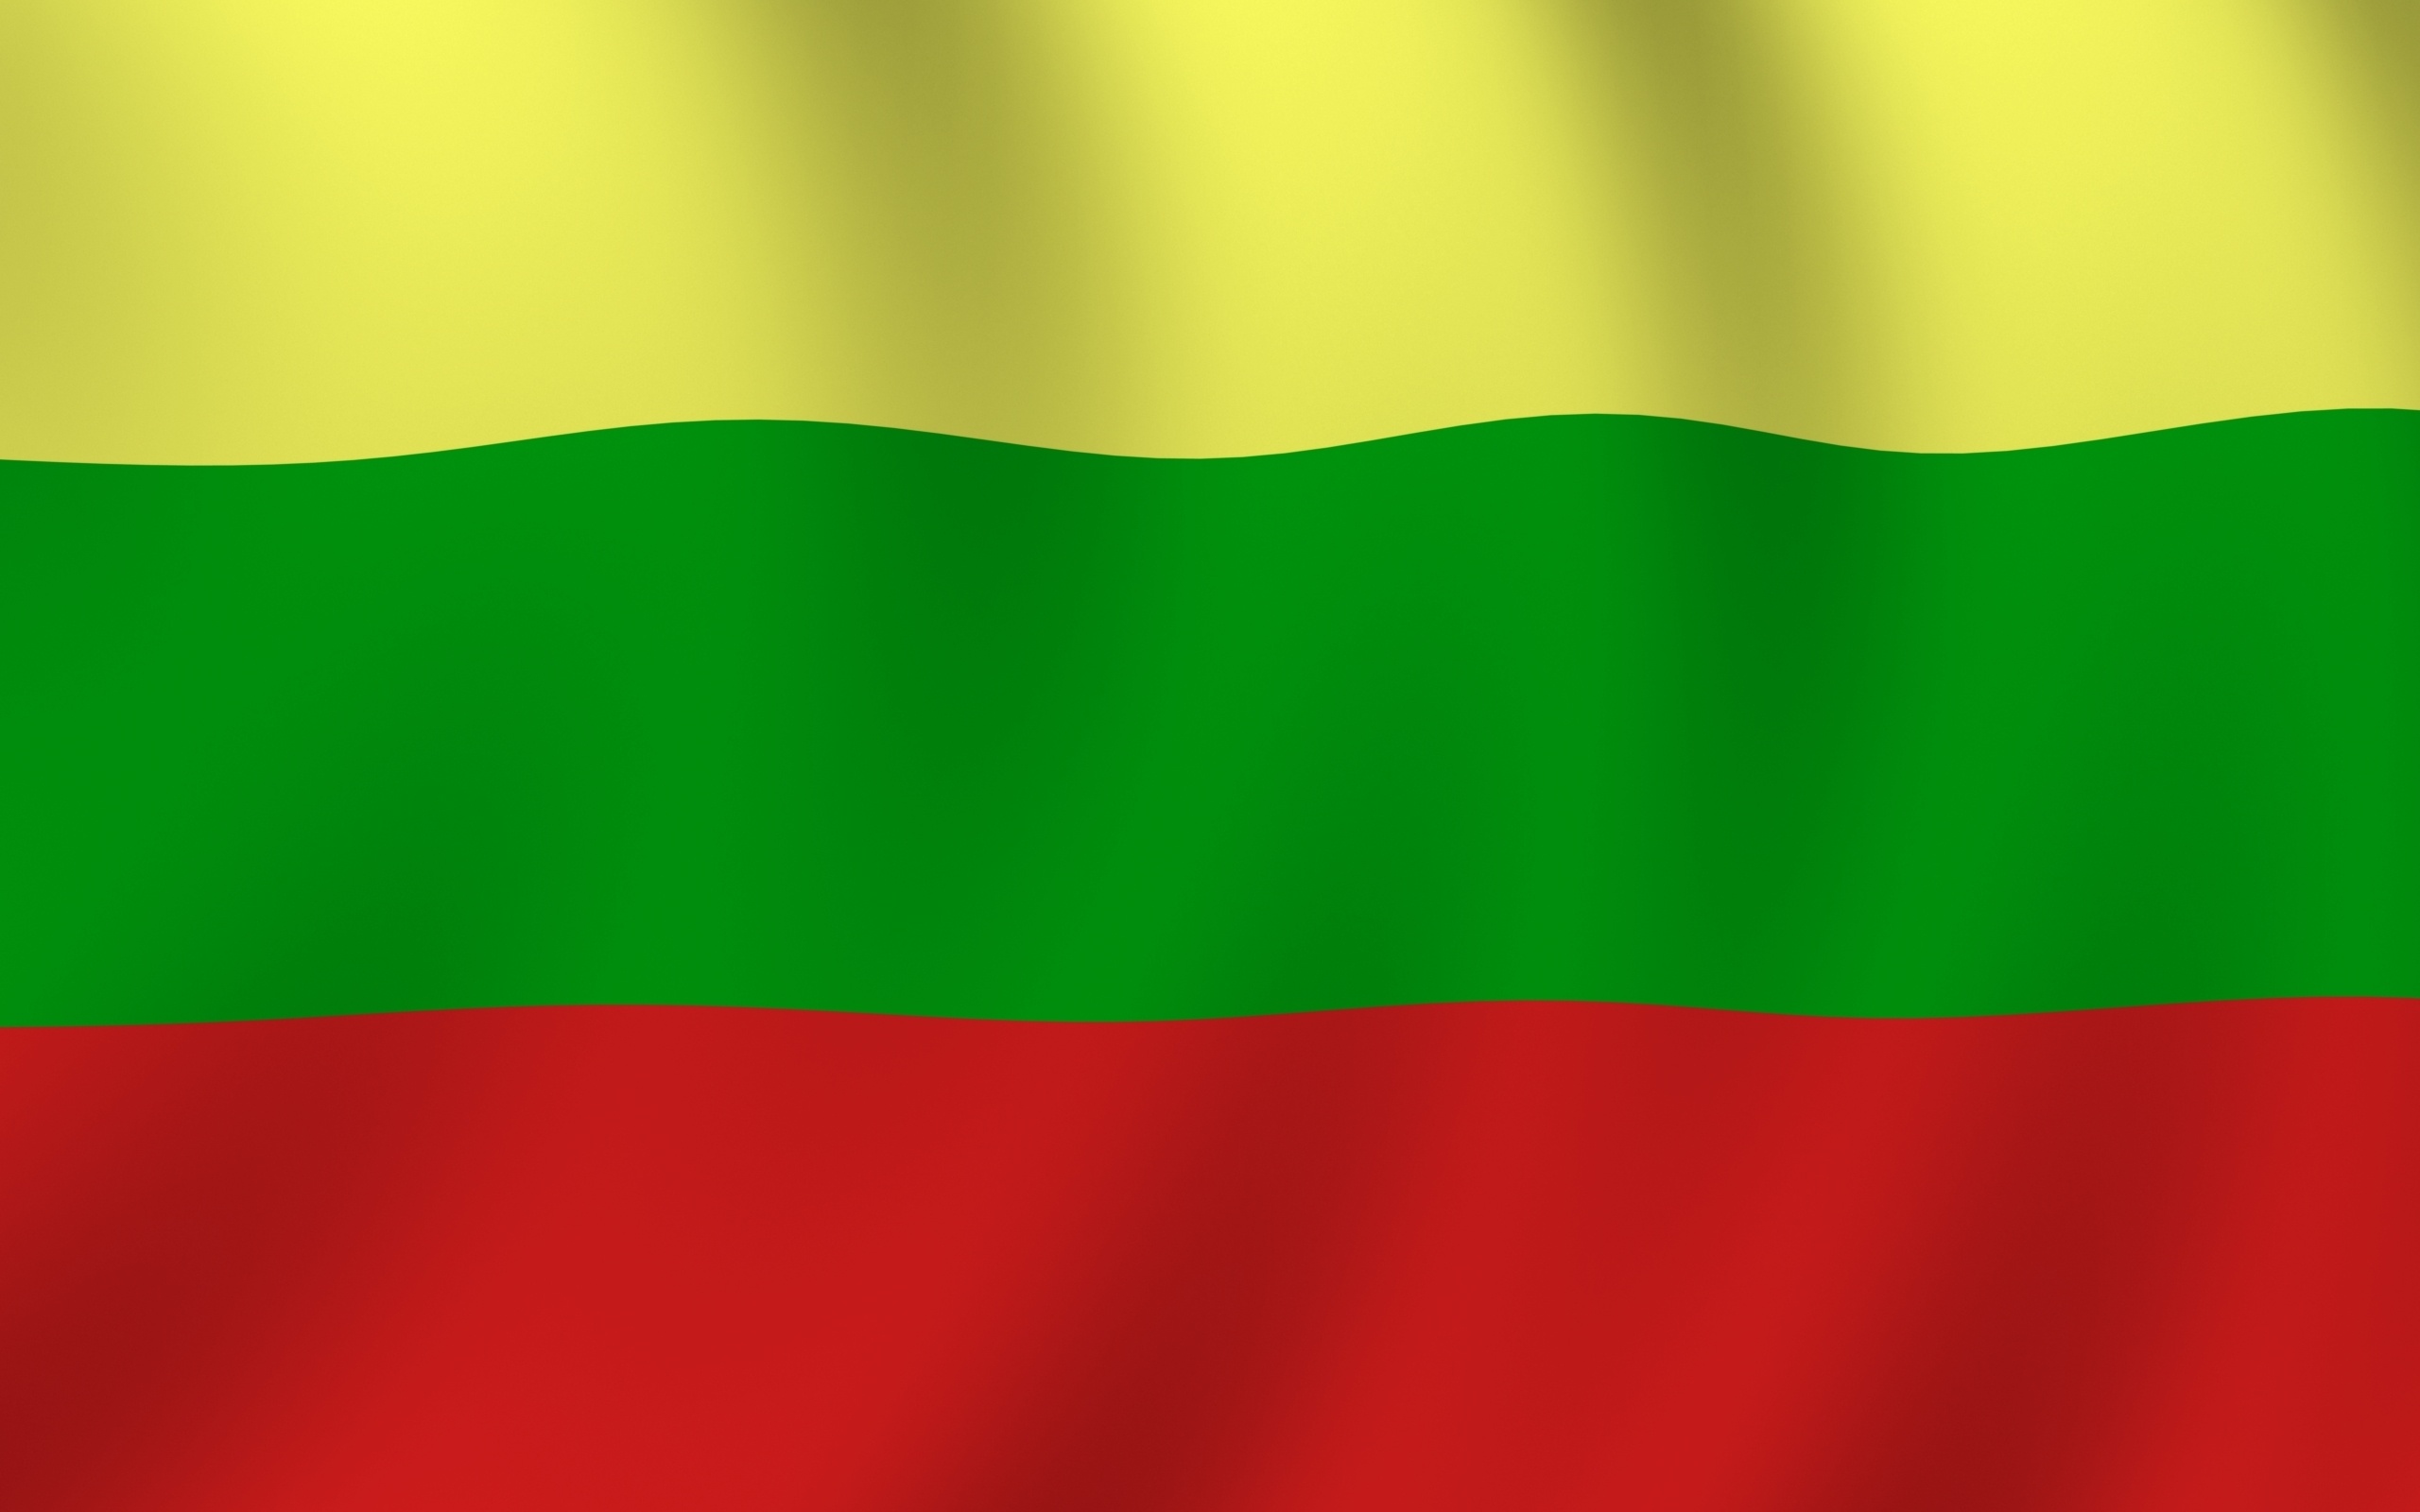 Скачать обои Флаг Литвы на телефон бесплатно